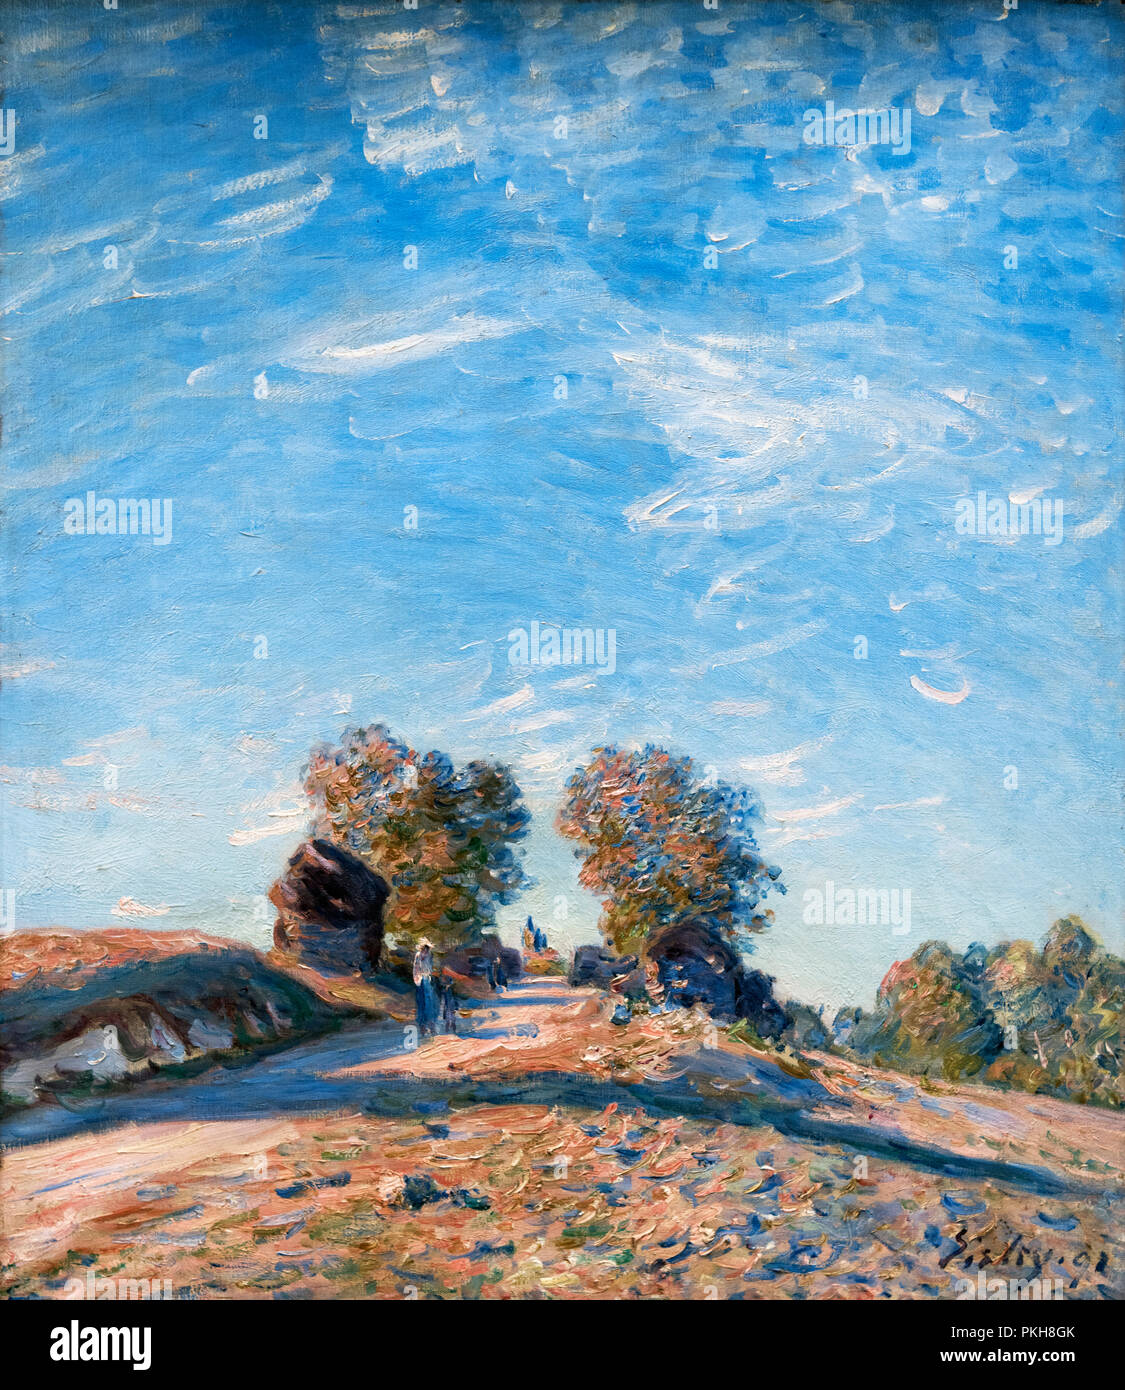 Chemin Montant au soleil (voie d'escalade vers le Soleil) par Alfred Sisley (1839-1899), huile sur toile, 1891 Banque D'Images